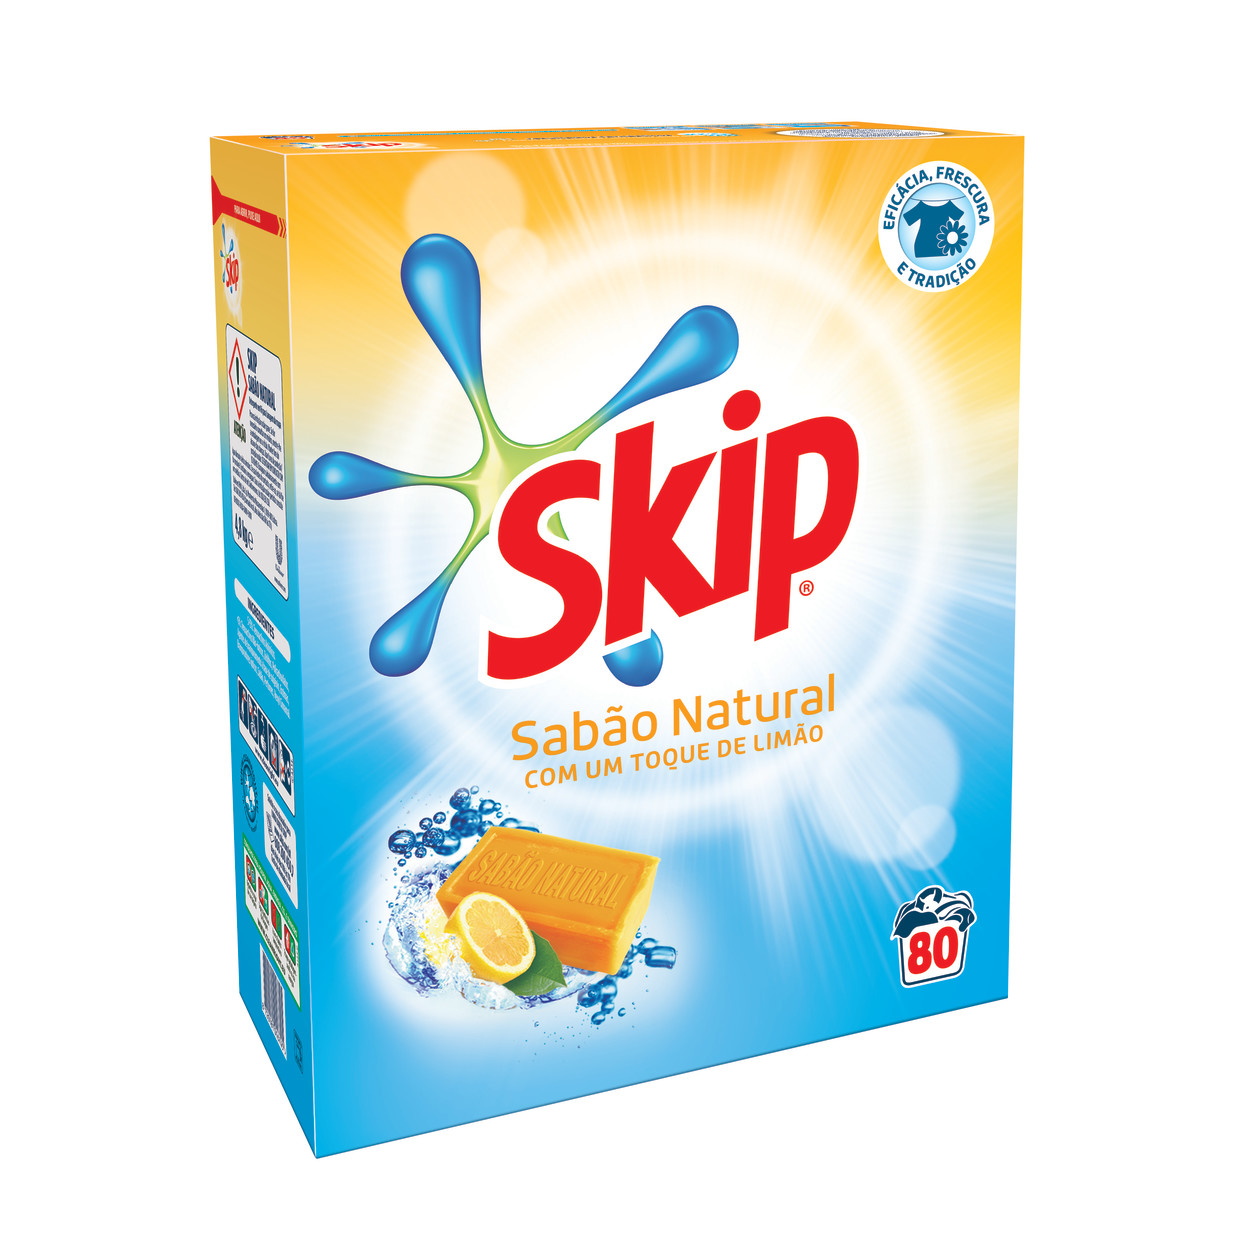 SKIP Detergente Pó Sabão Natural packshot